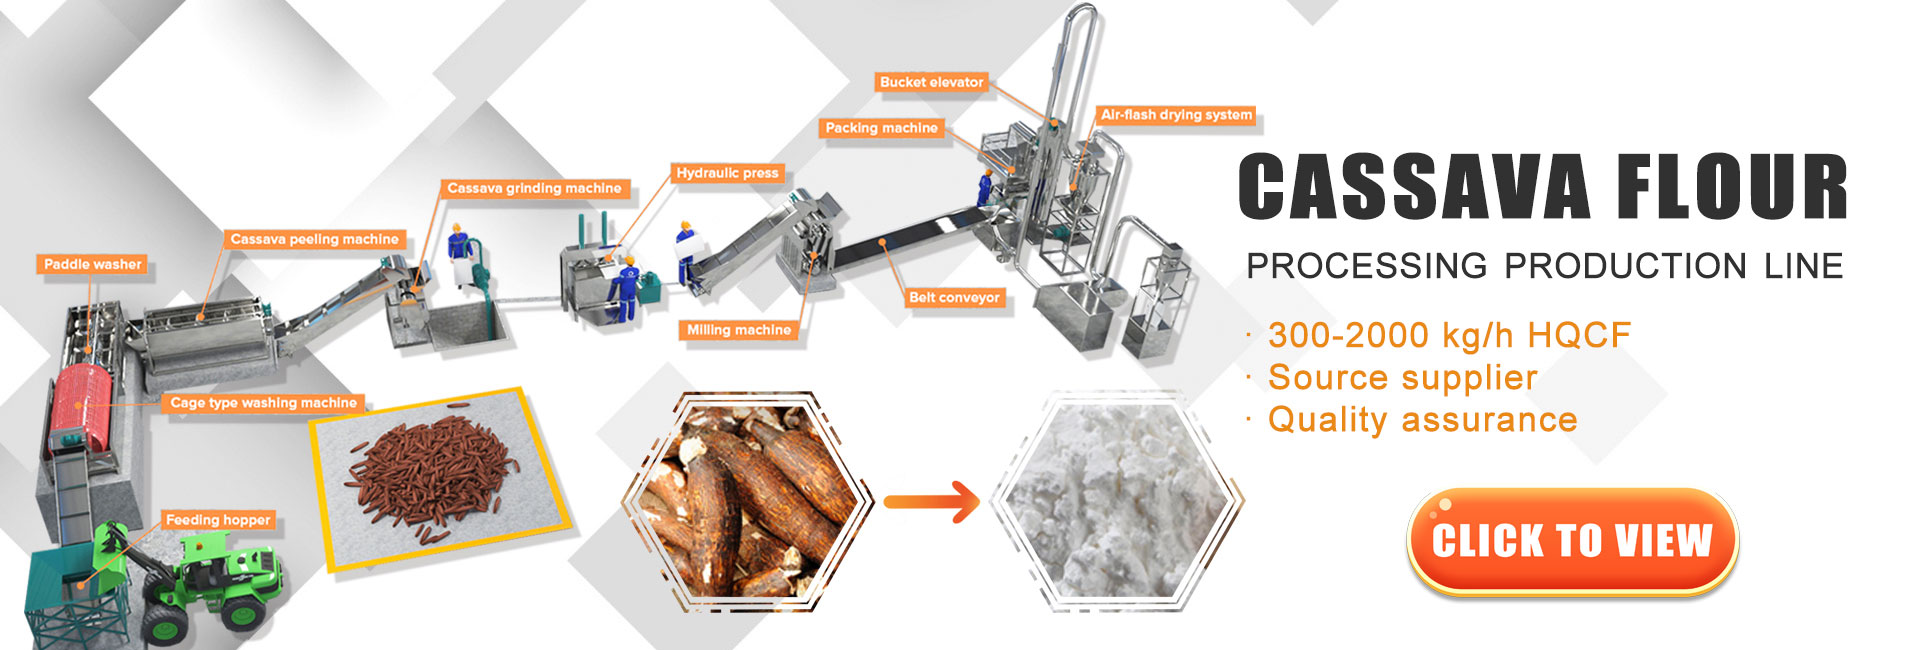 cassava flour processing production line